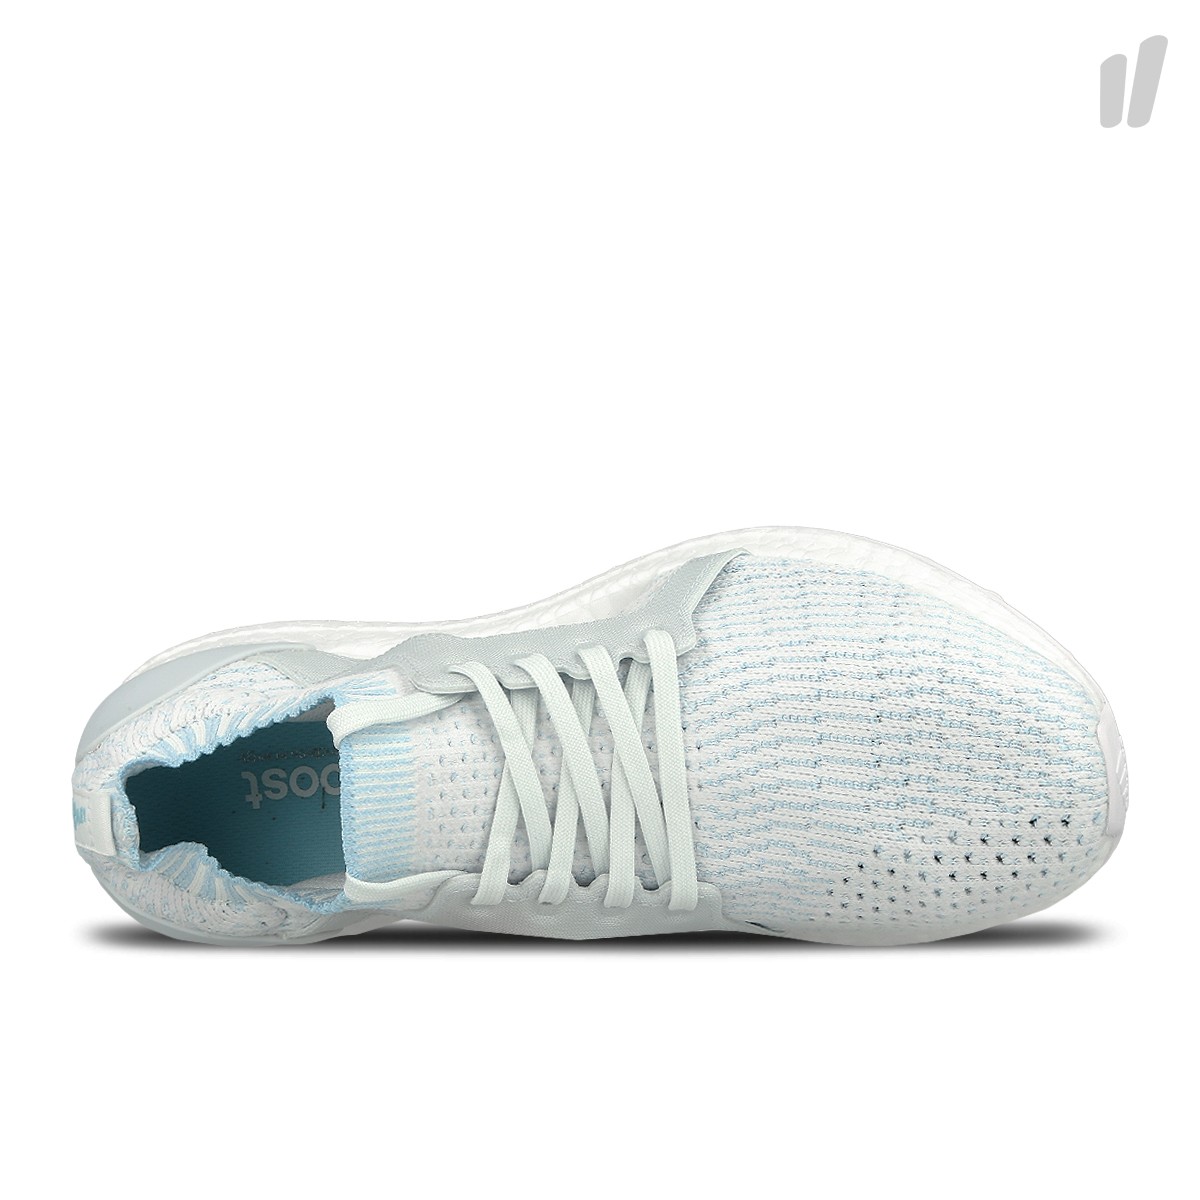 Adidas W UltraBOOST X Parley
Footwear White / Icey Blue